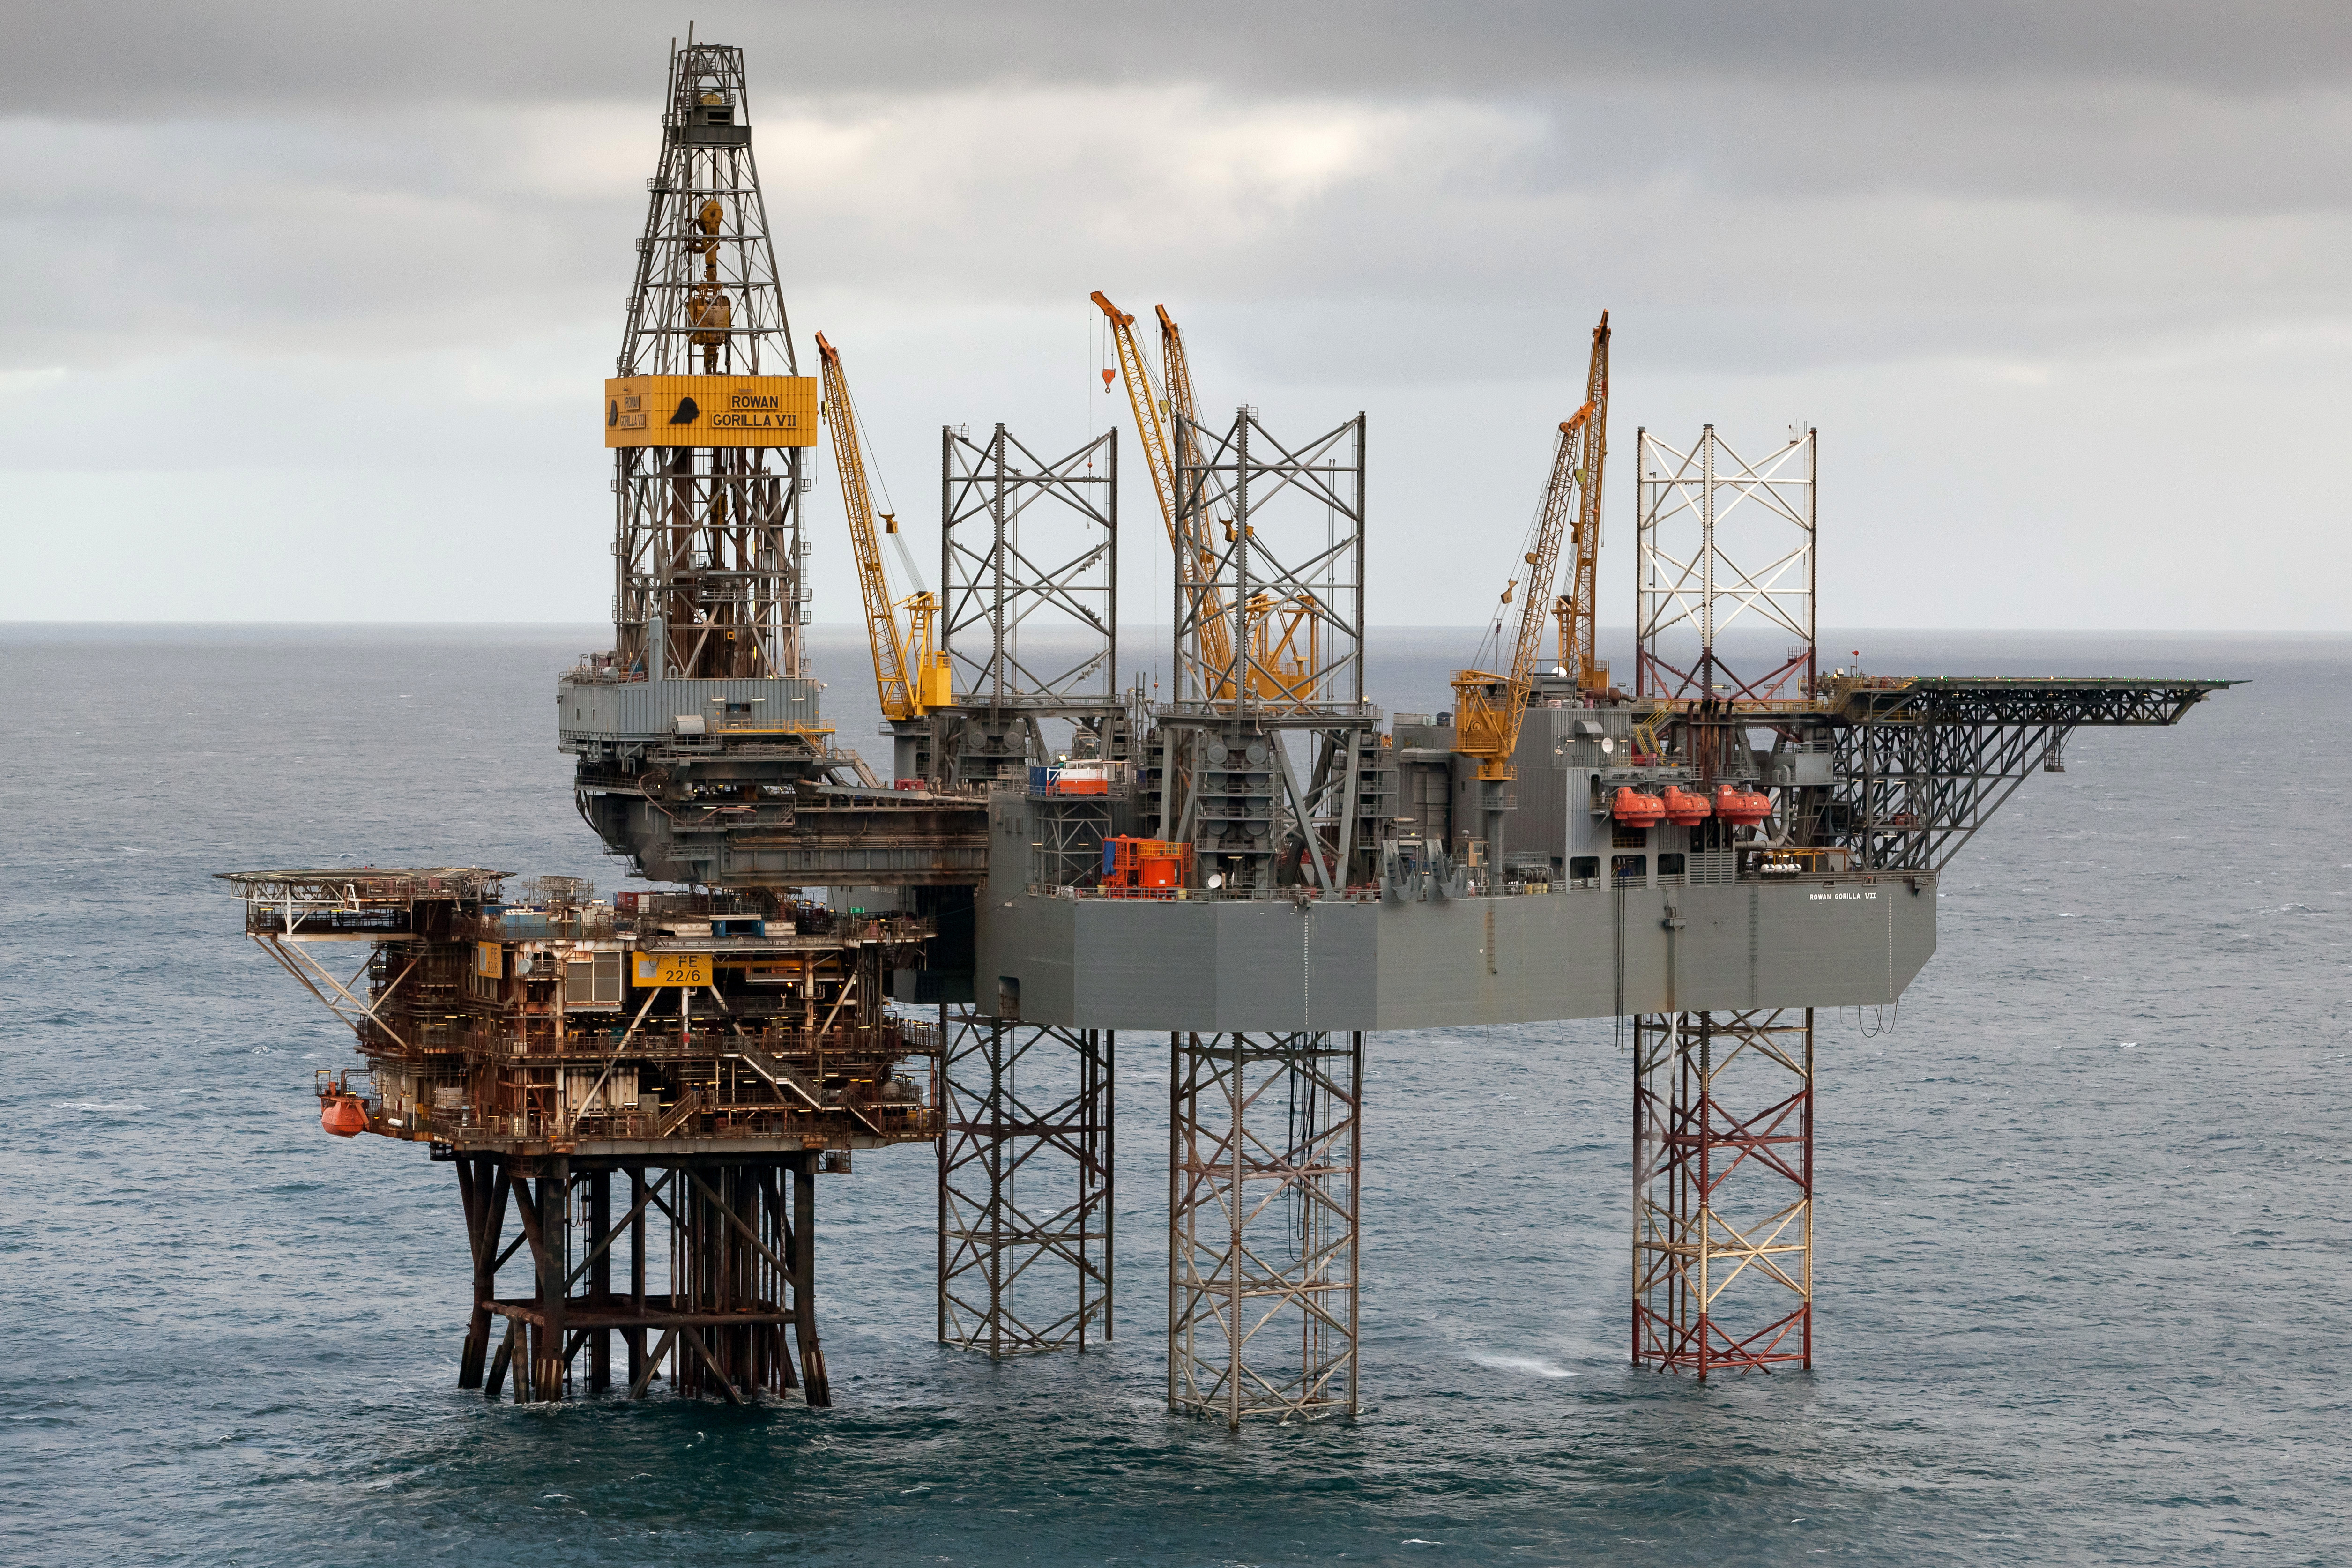 Морская буровая платформа. Нефтевышка в Северном море. Нефтяная платформа "Дропнер" 1995. Нефтяная платформа в Северном море. Нефтяная платформа Draugen.